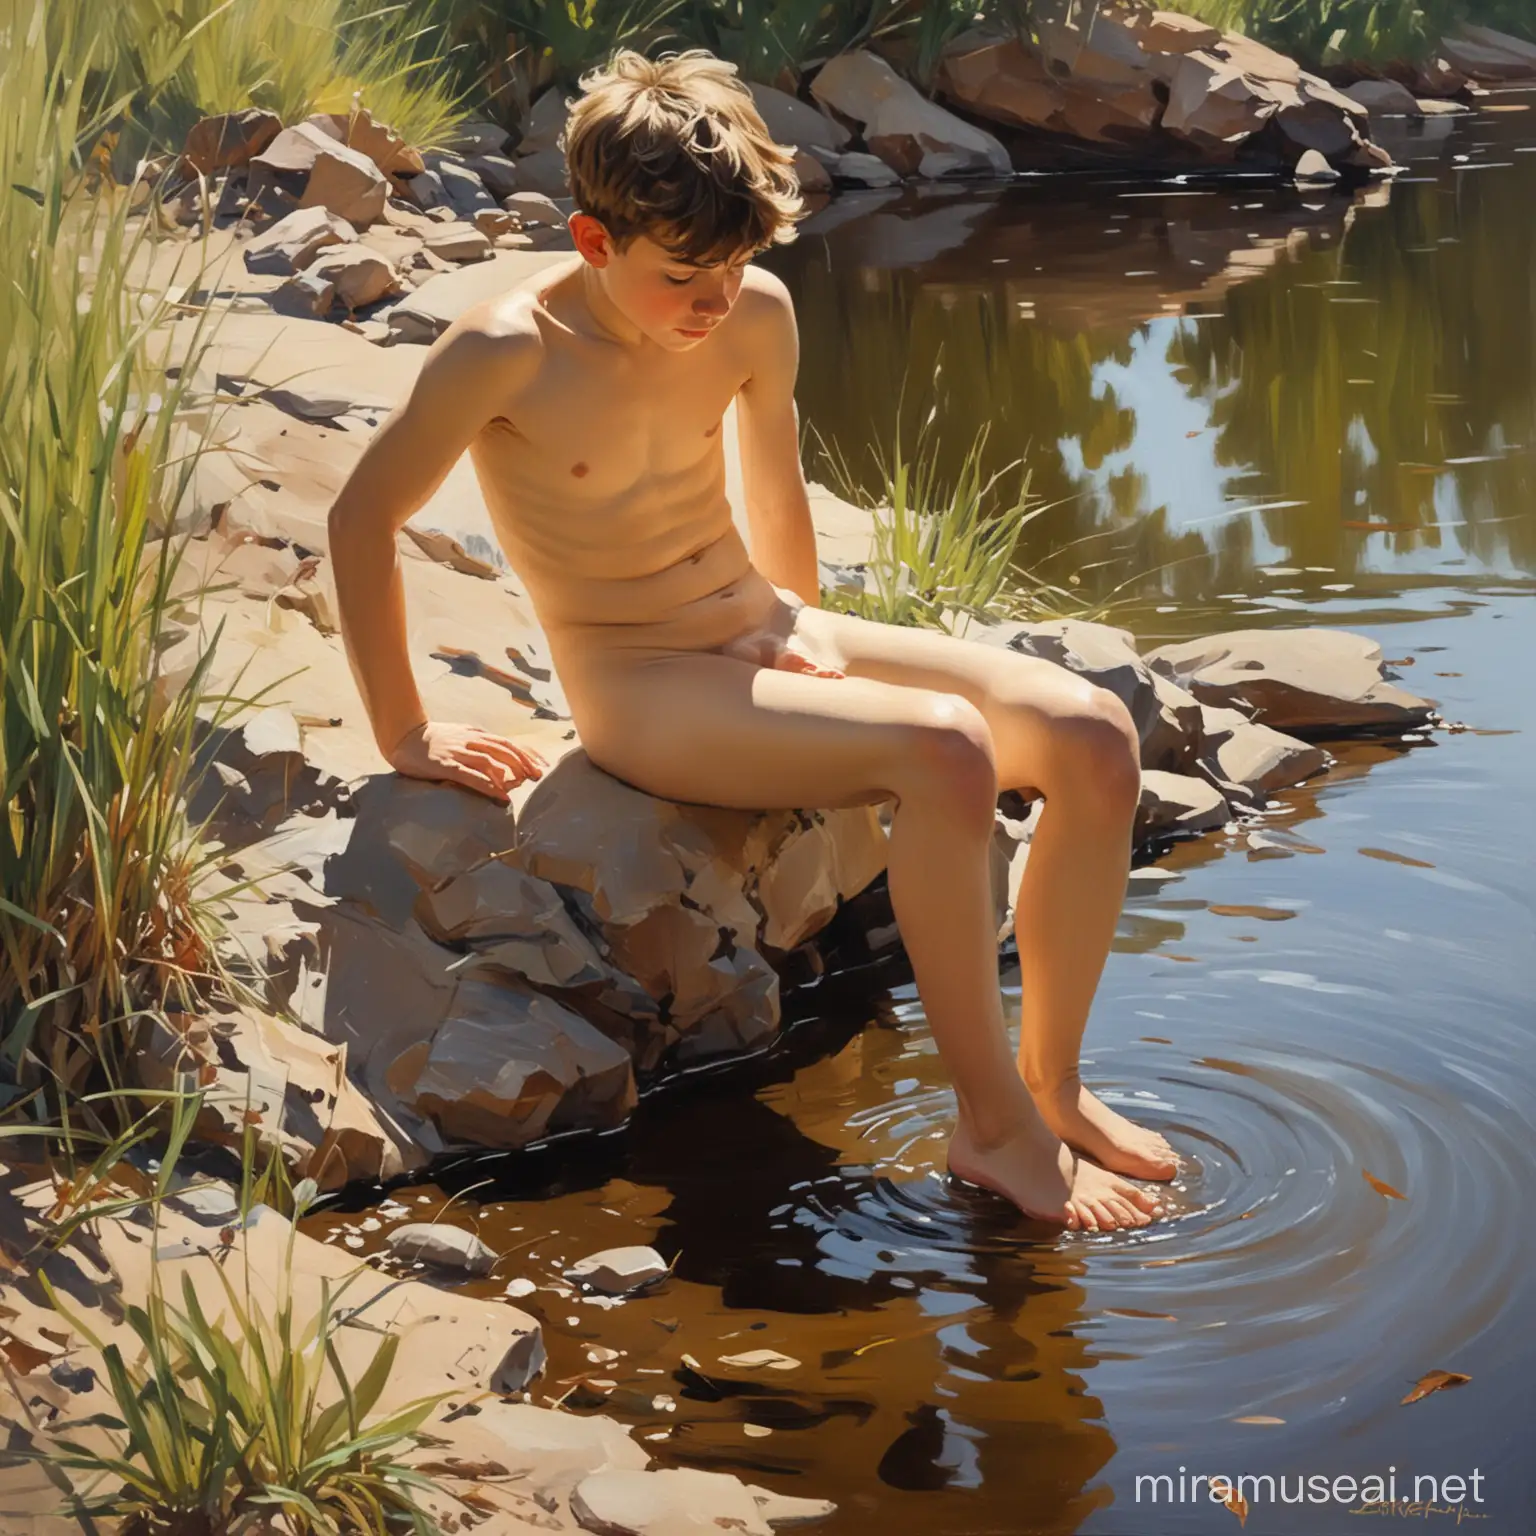 в стили хуудожника Хоакин Соролья ..картина. обнаженный 
 мальчик на фоне реки .осфещение контражур.ноги в невысокой траве.